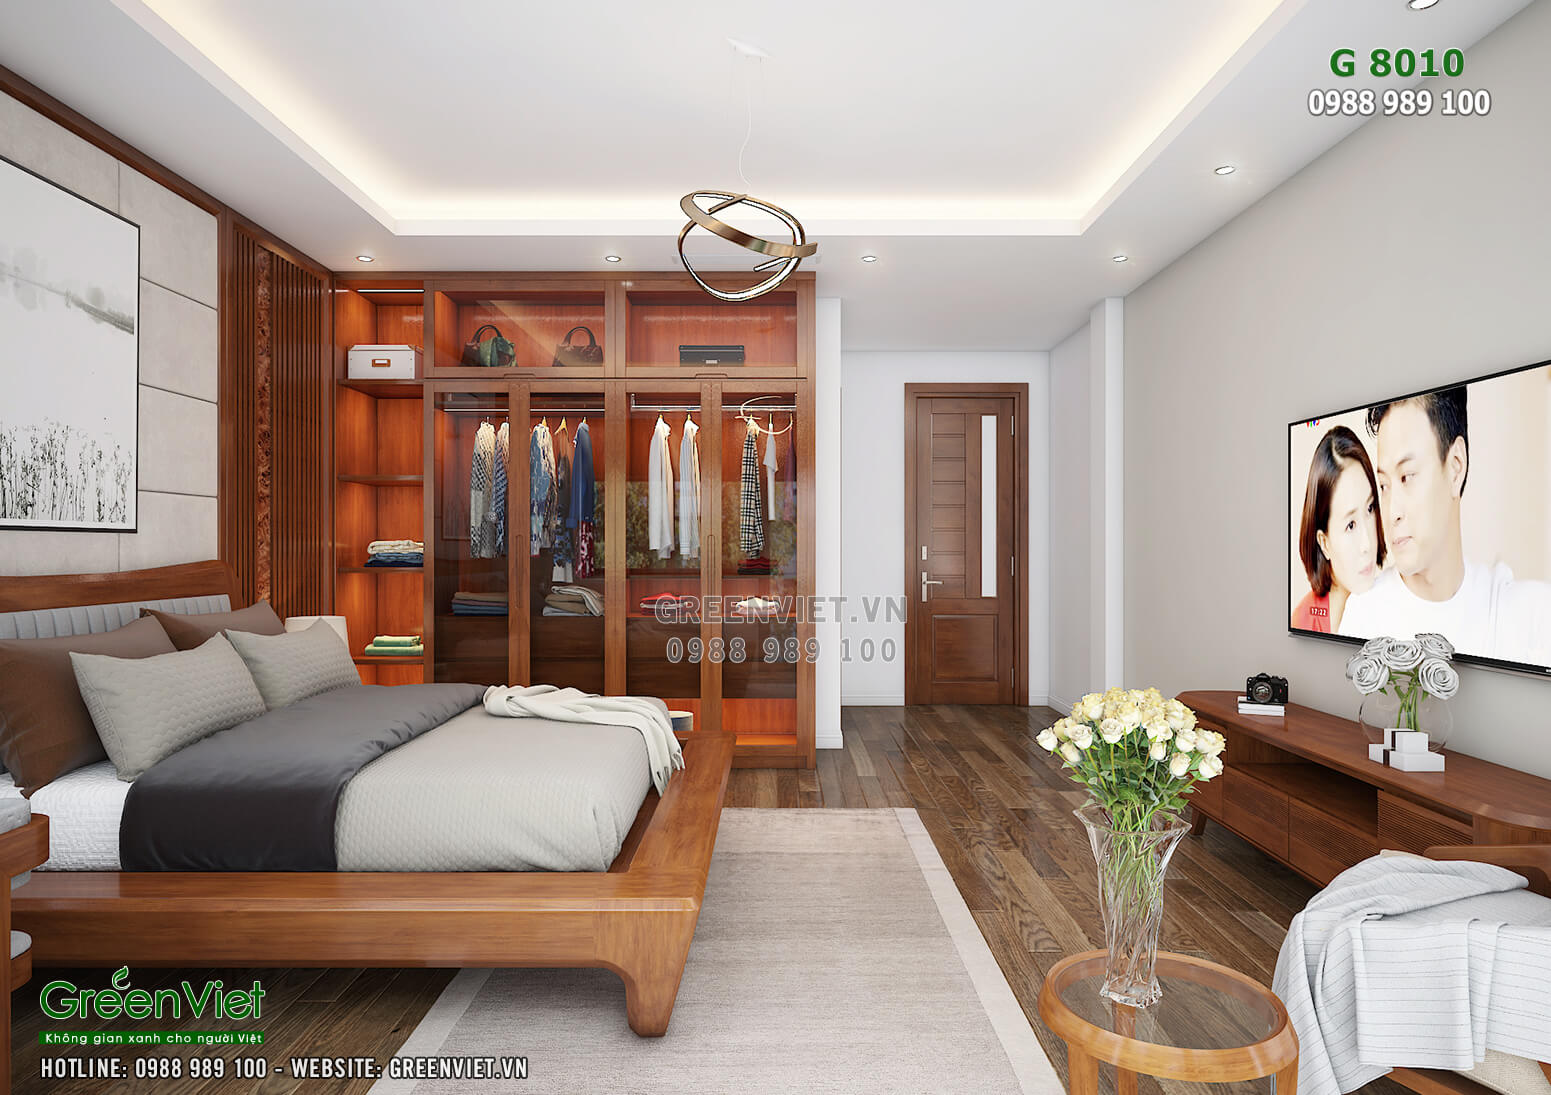 Thiết kế nội thất phòng ngủ hiện đại, trần thạch cao, sàn gỗ tiện nghi